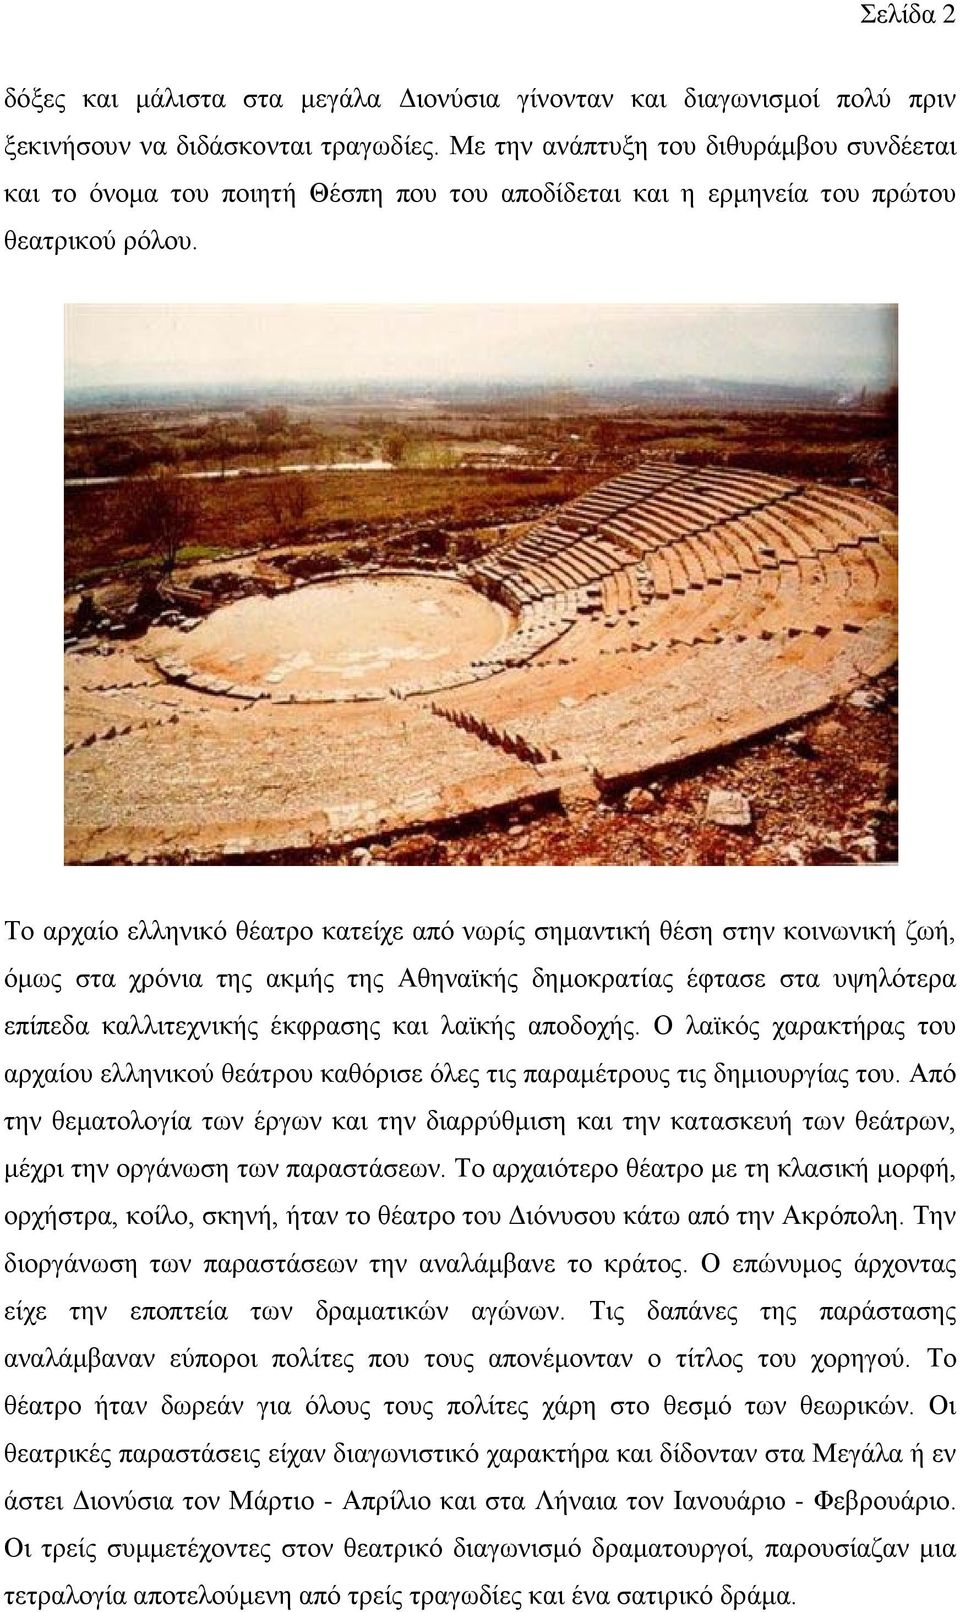 Το αρχαίο ελληνικό θέατρο κατείχε από νωρίς σημαντική θέση στην κοινωνική ζωή, όμως στα χρόνια της ακμής της Αθηναϊκής δημοκρατίας έφτασε στα υψηλότερα επίπεδα καλλιτεχνικής έκφρασης και λαϊκής